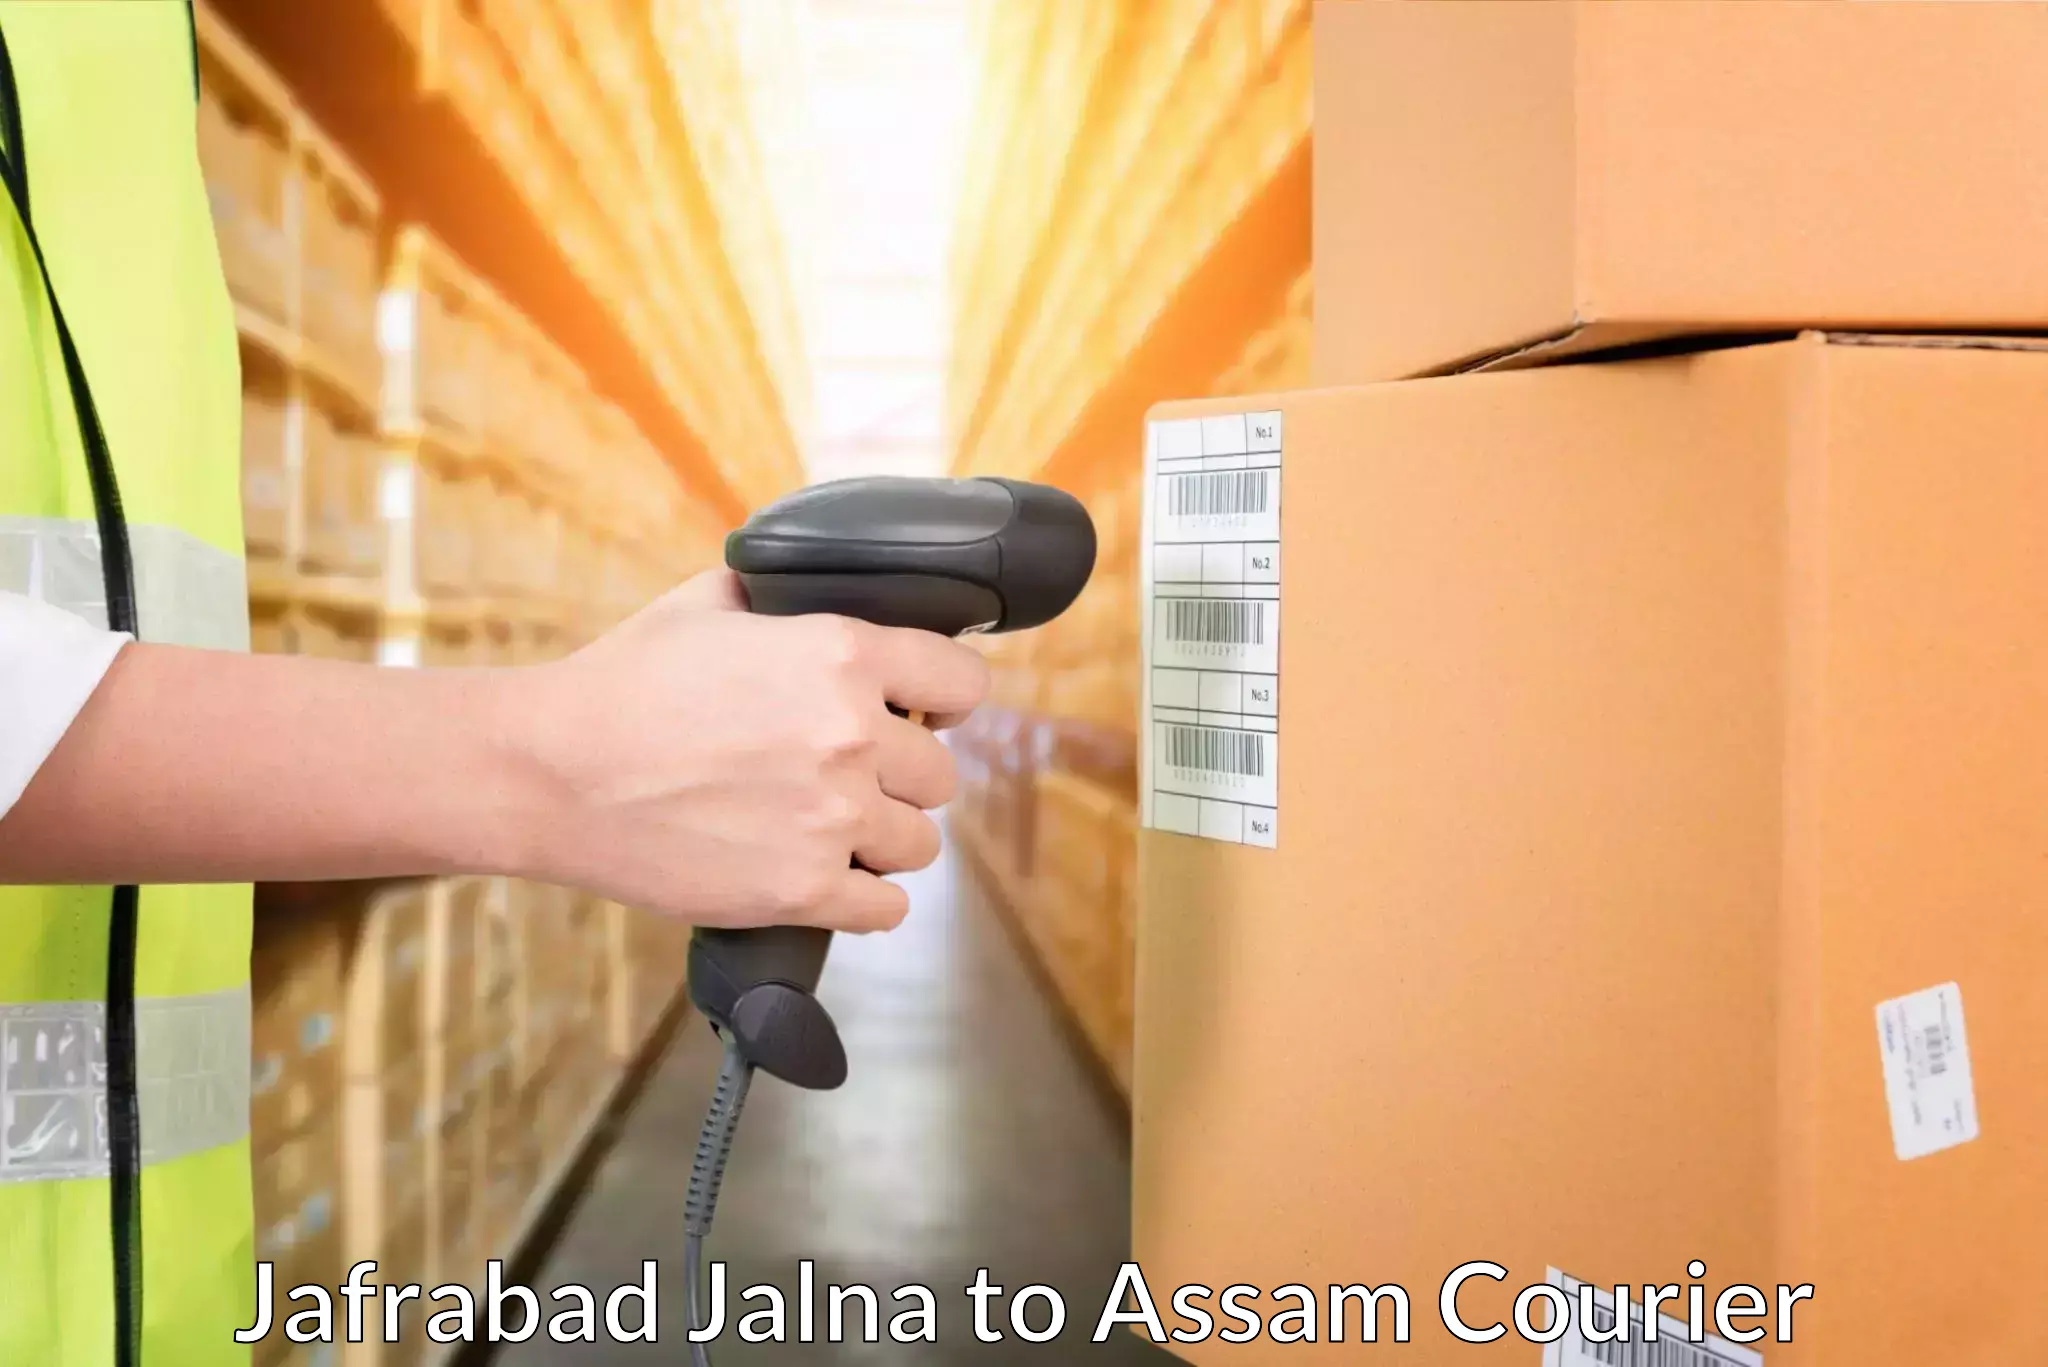 Efficient parcel service in Jafrabad Jalna to Badarpur Karimganj